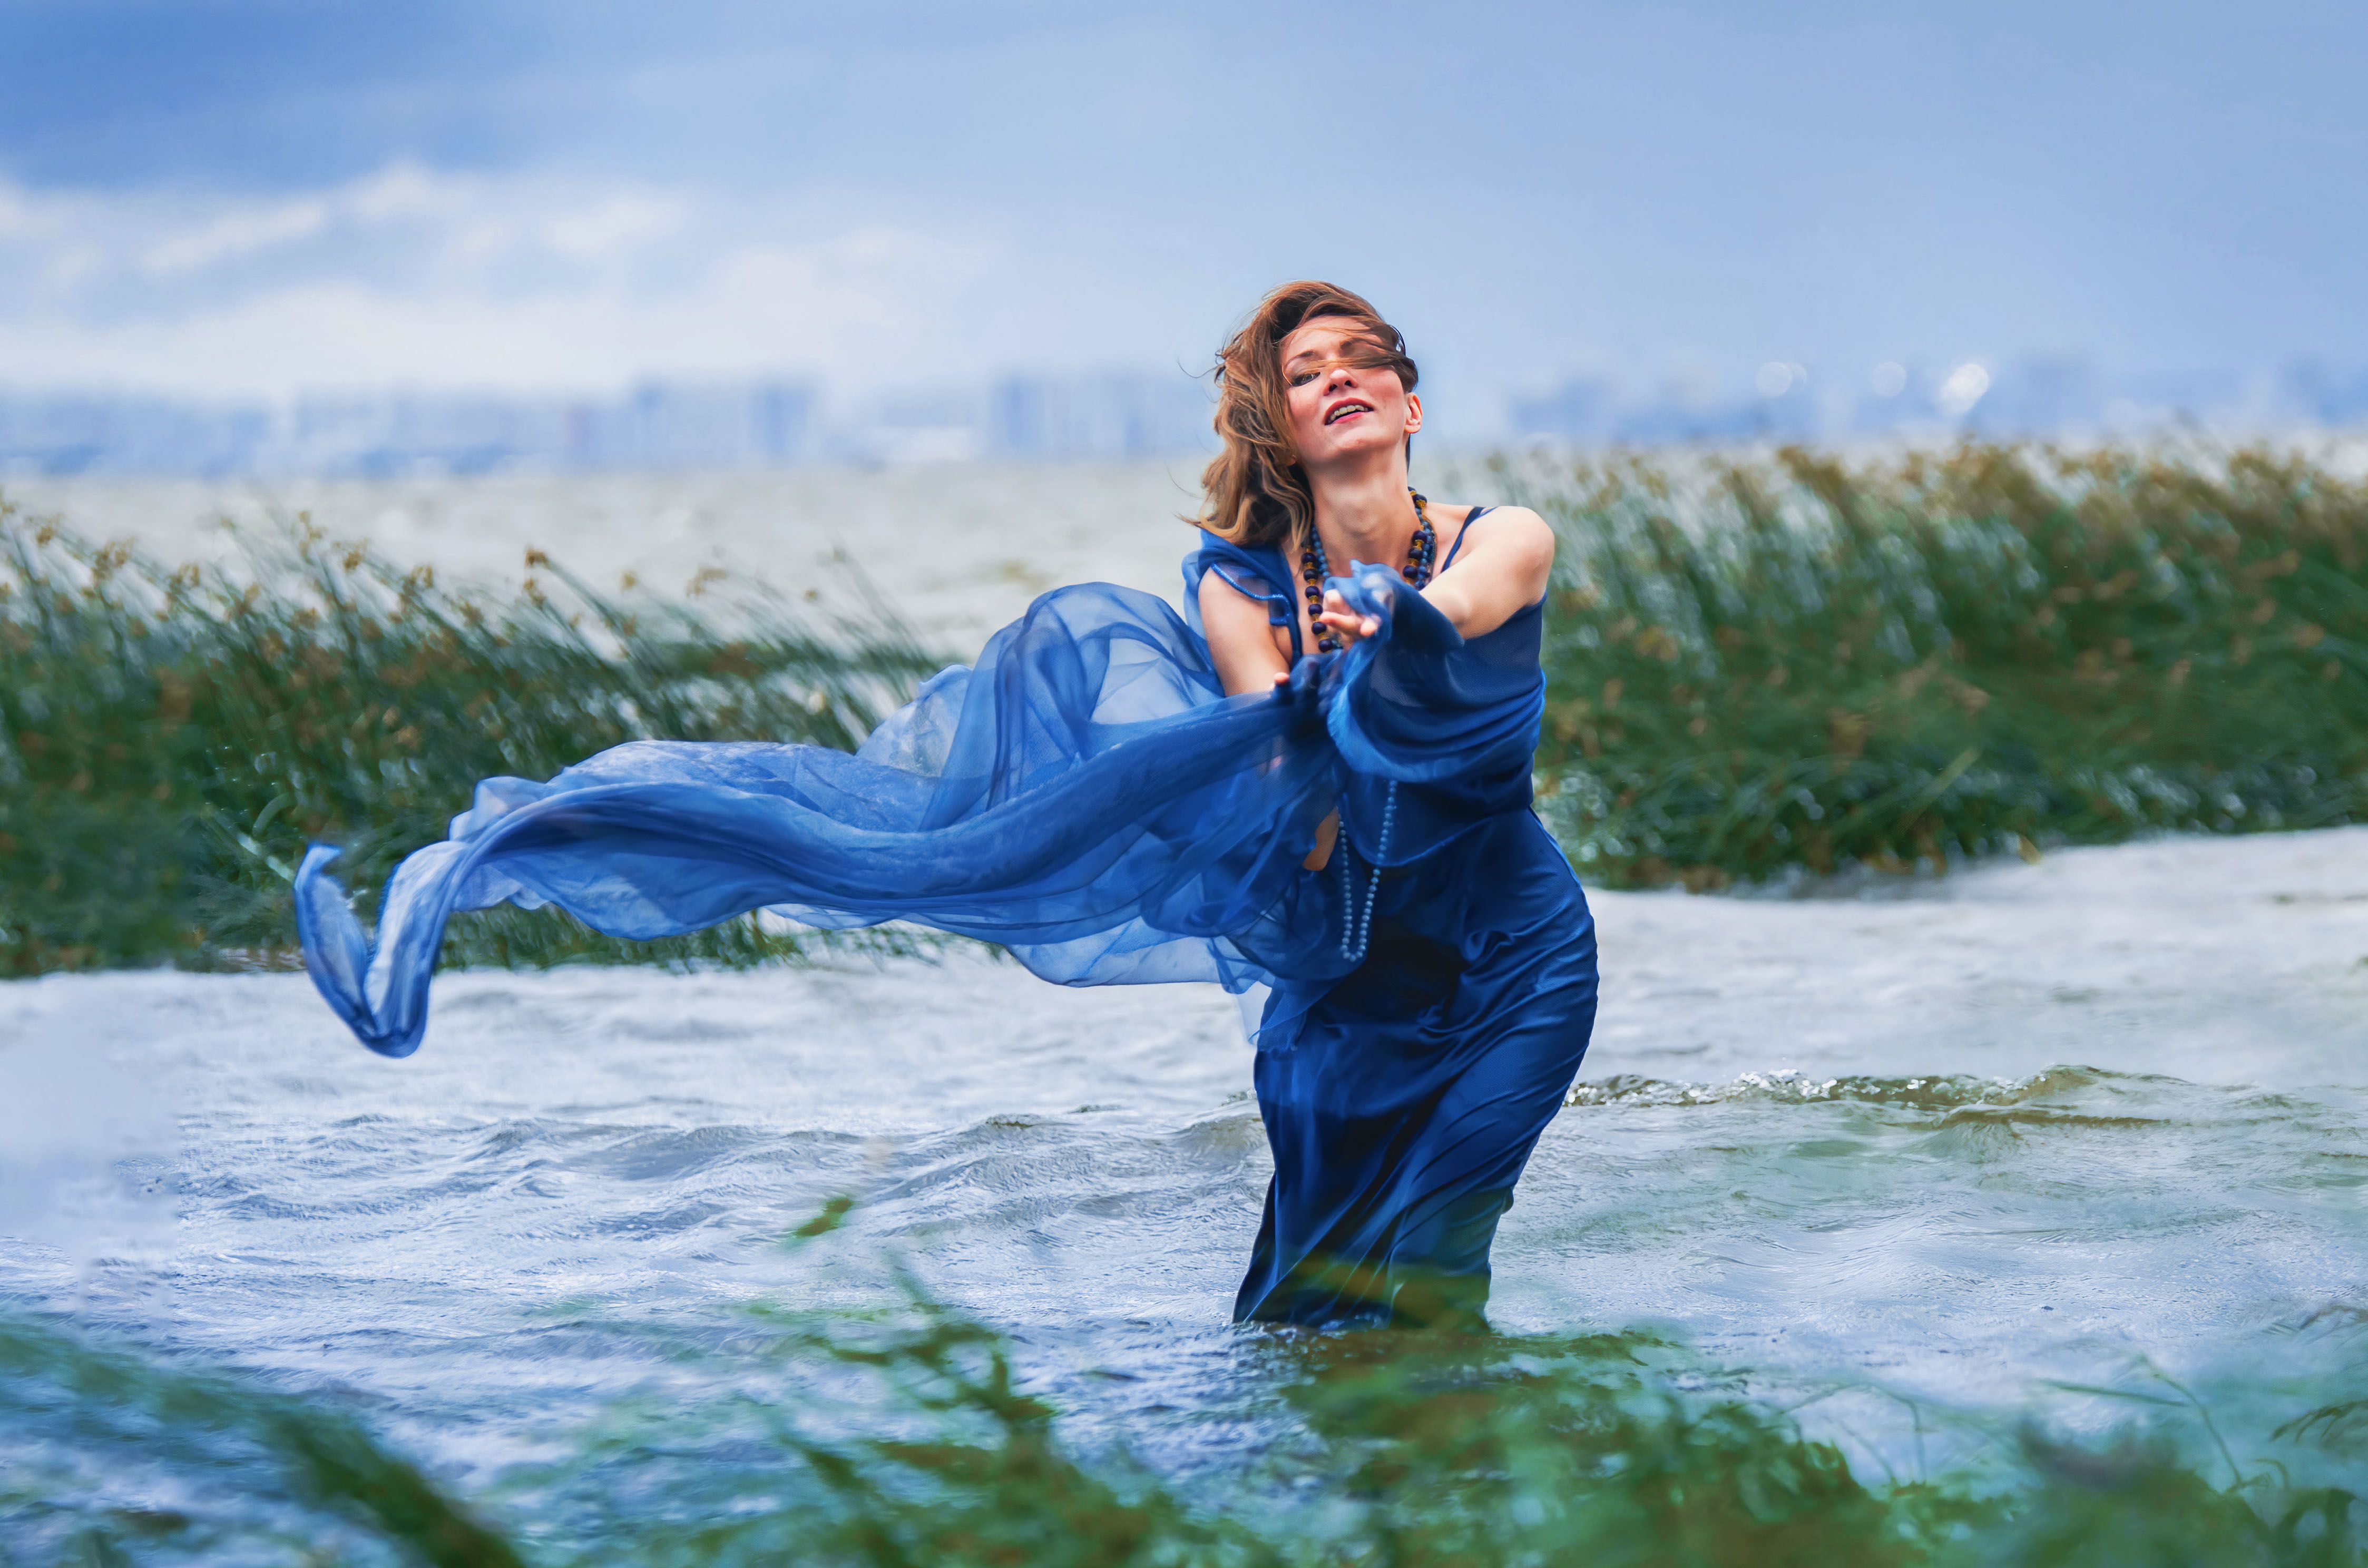 вода, ветер, летящая ткань, девушка, синее платье, Елена Аверина